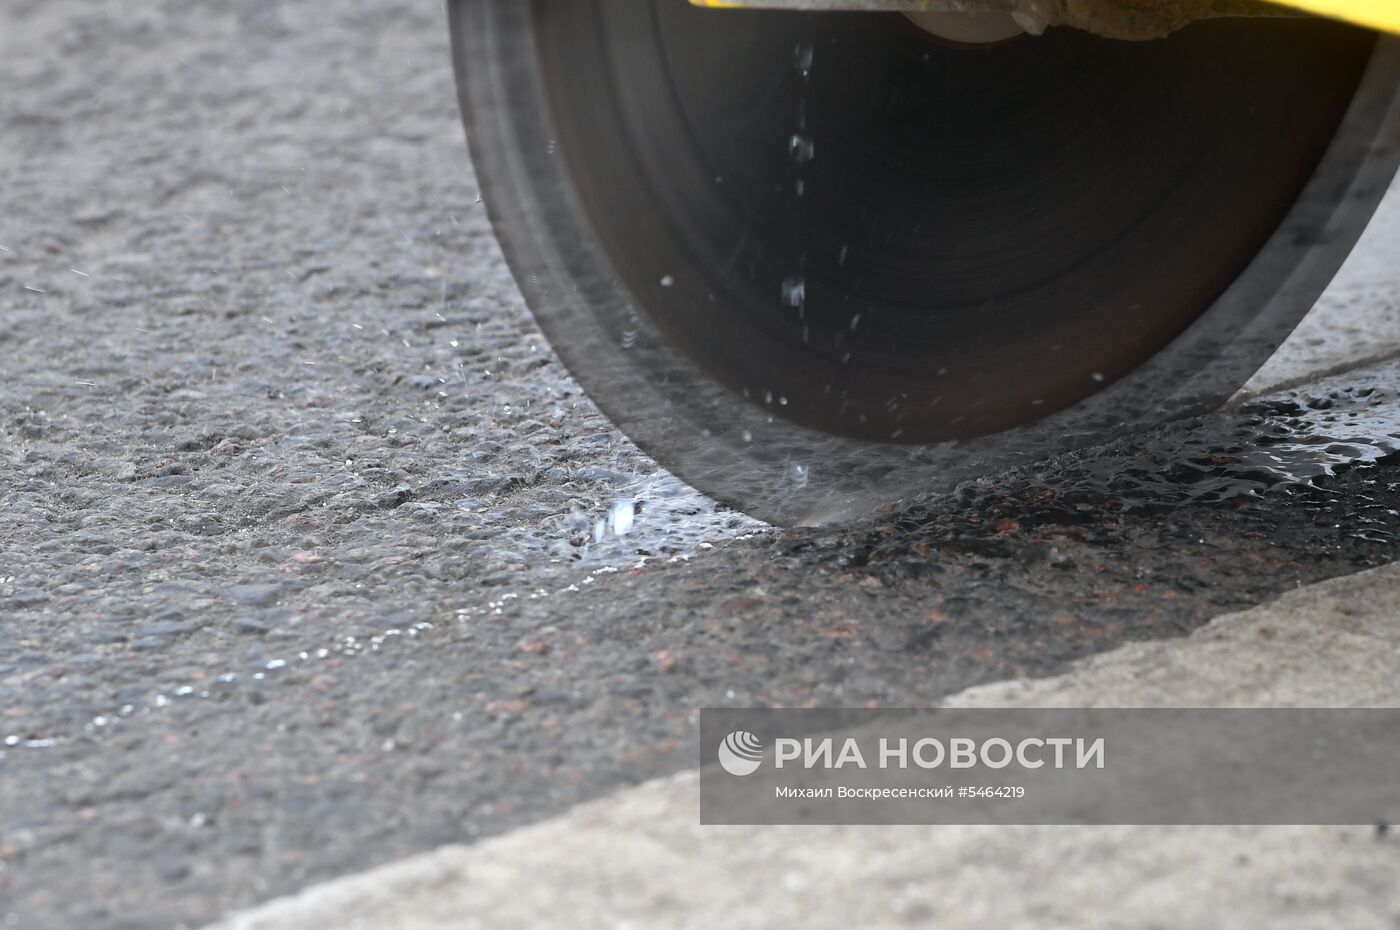 Ремонт дороги в Москве